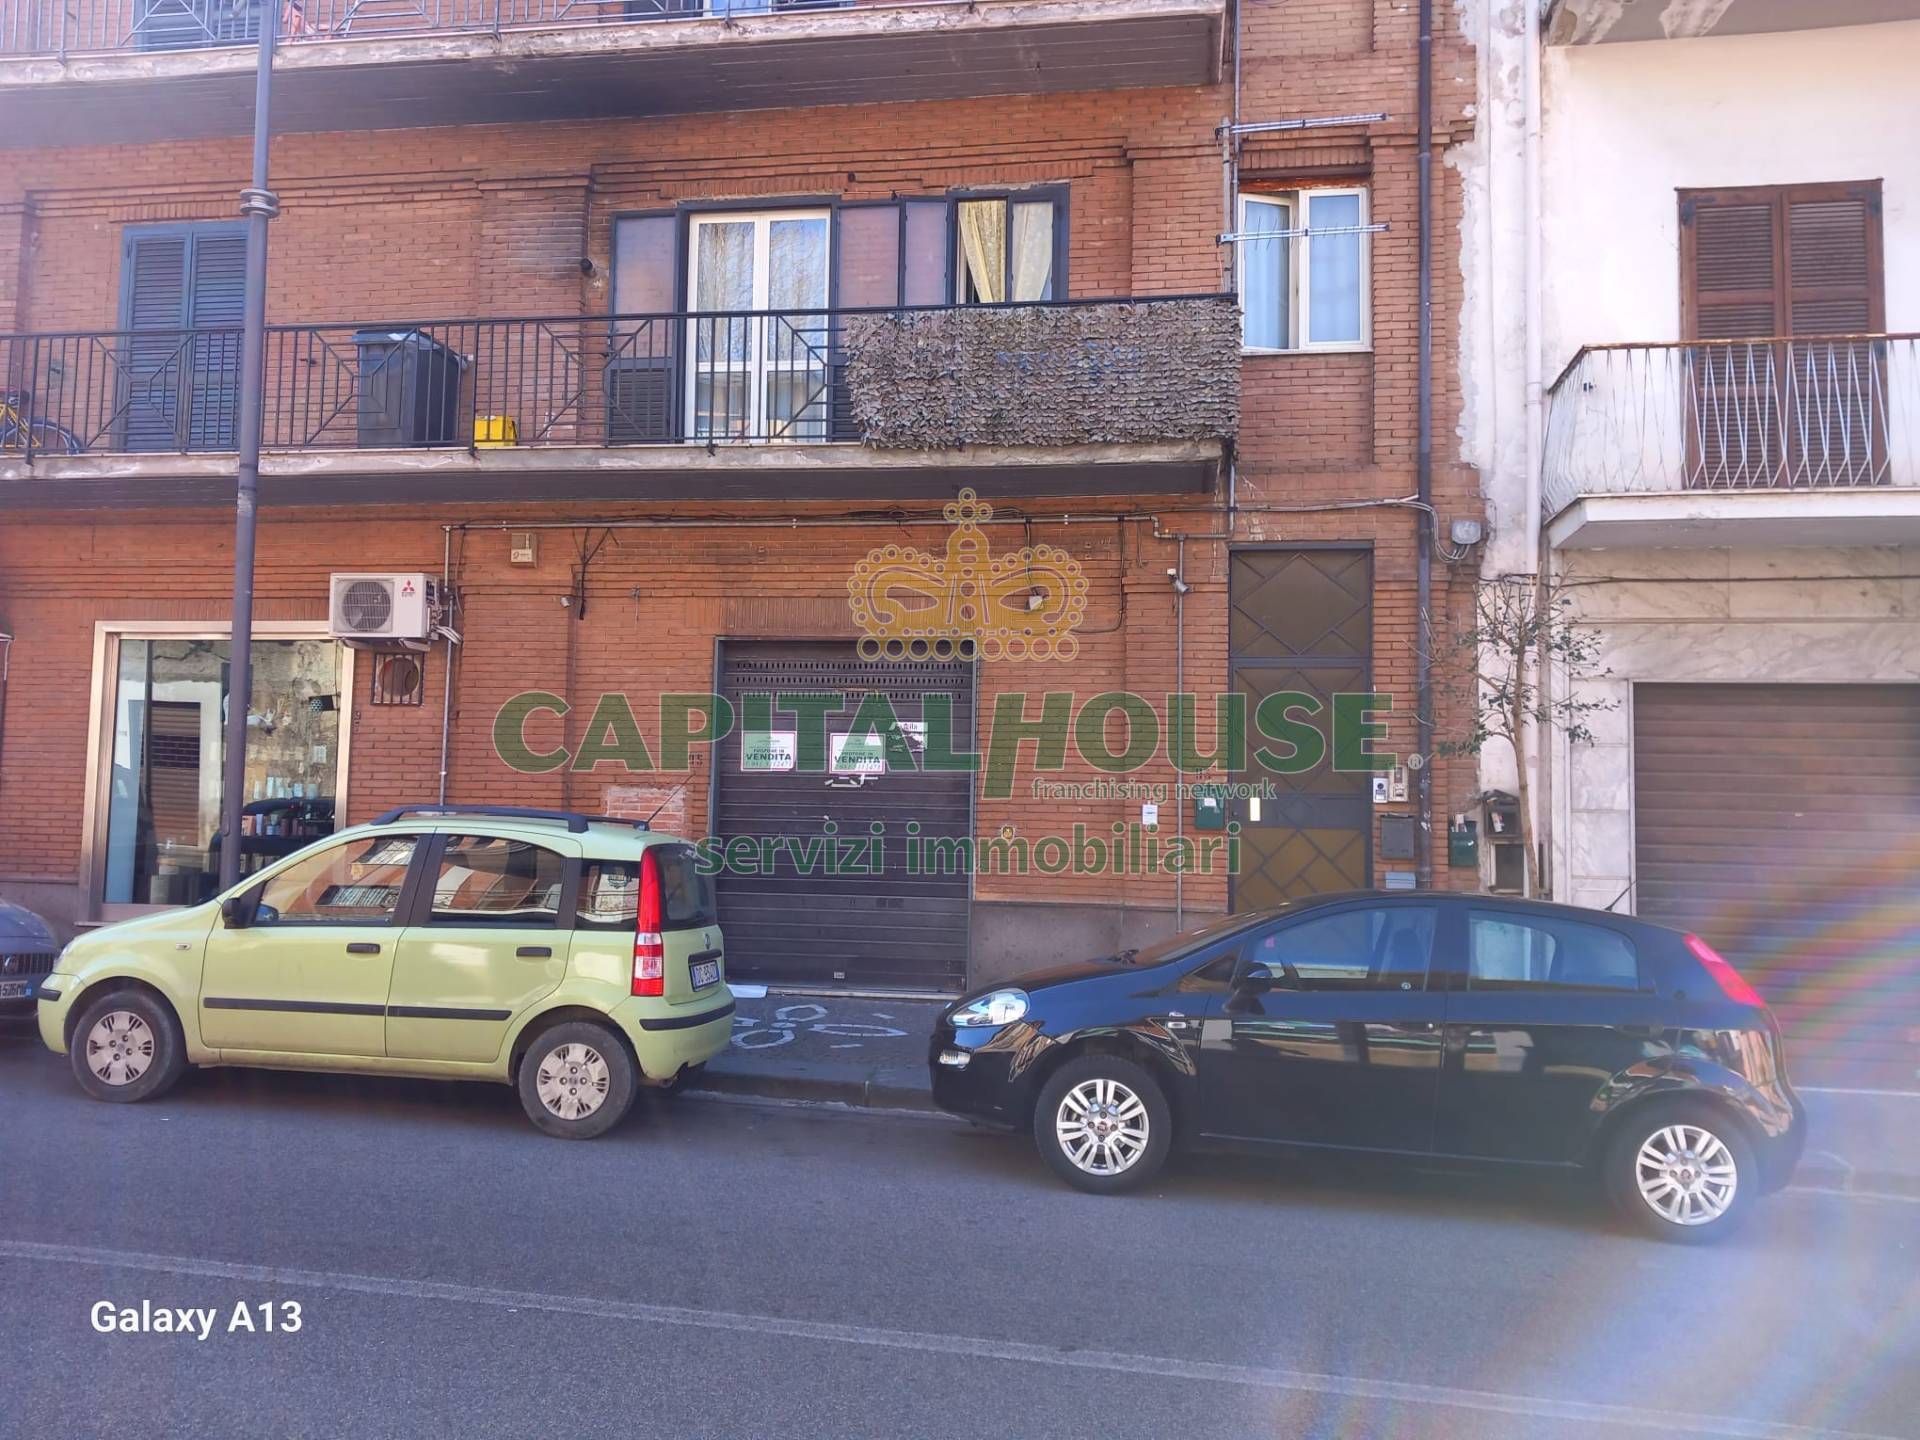 Negozio / Locale in vendita a Mugnano del Cardinale, 9999 locali, prezzo € 80.000 | PortaleAgenzieImmobiliari.it